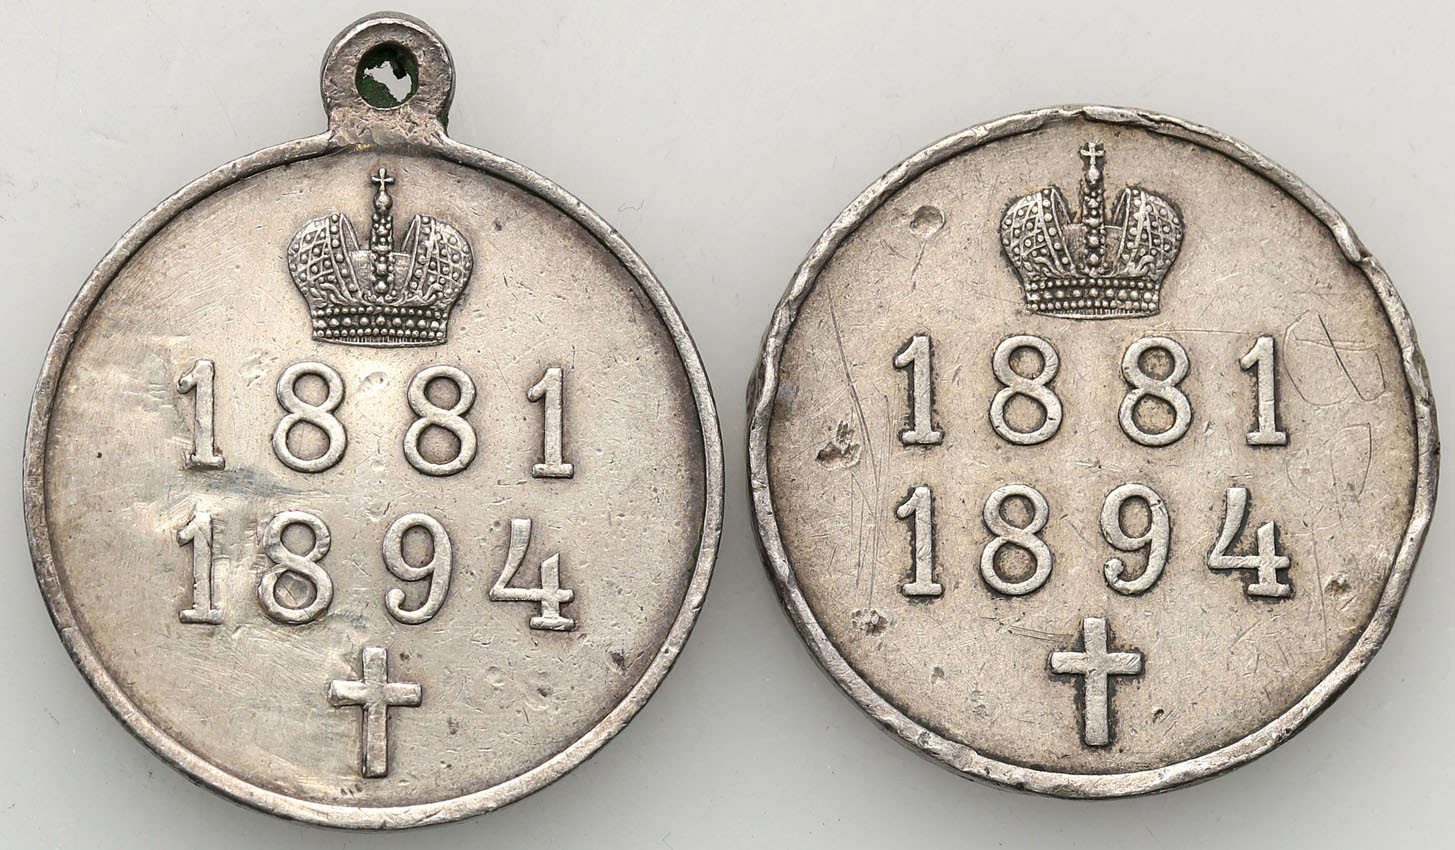 Rosja. Aleksander III. Medal pośmiertny ku pamięci panowania cara Aleksandra III 1894, Warszawa, zestaw 2 sztuk